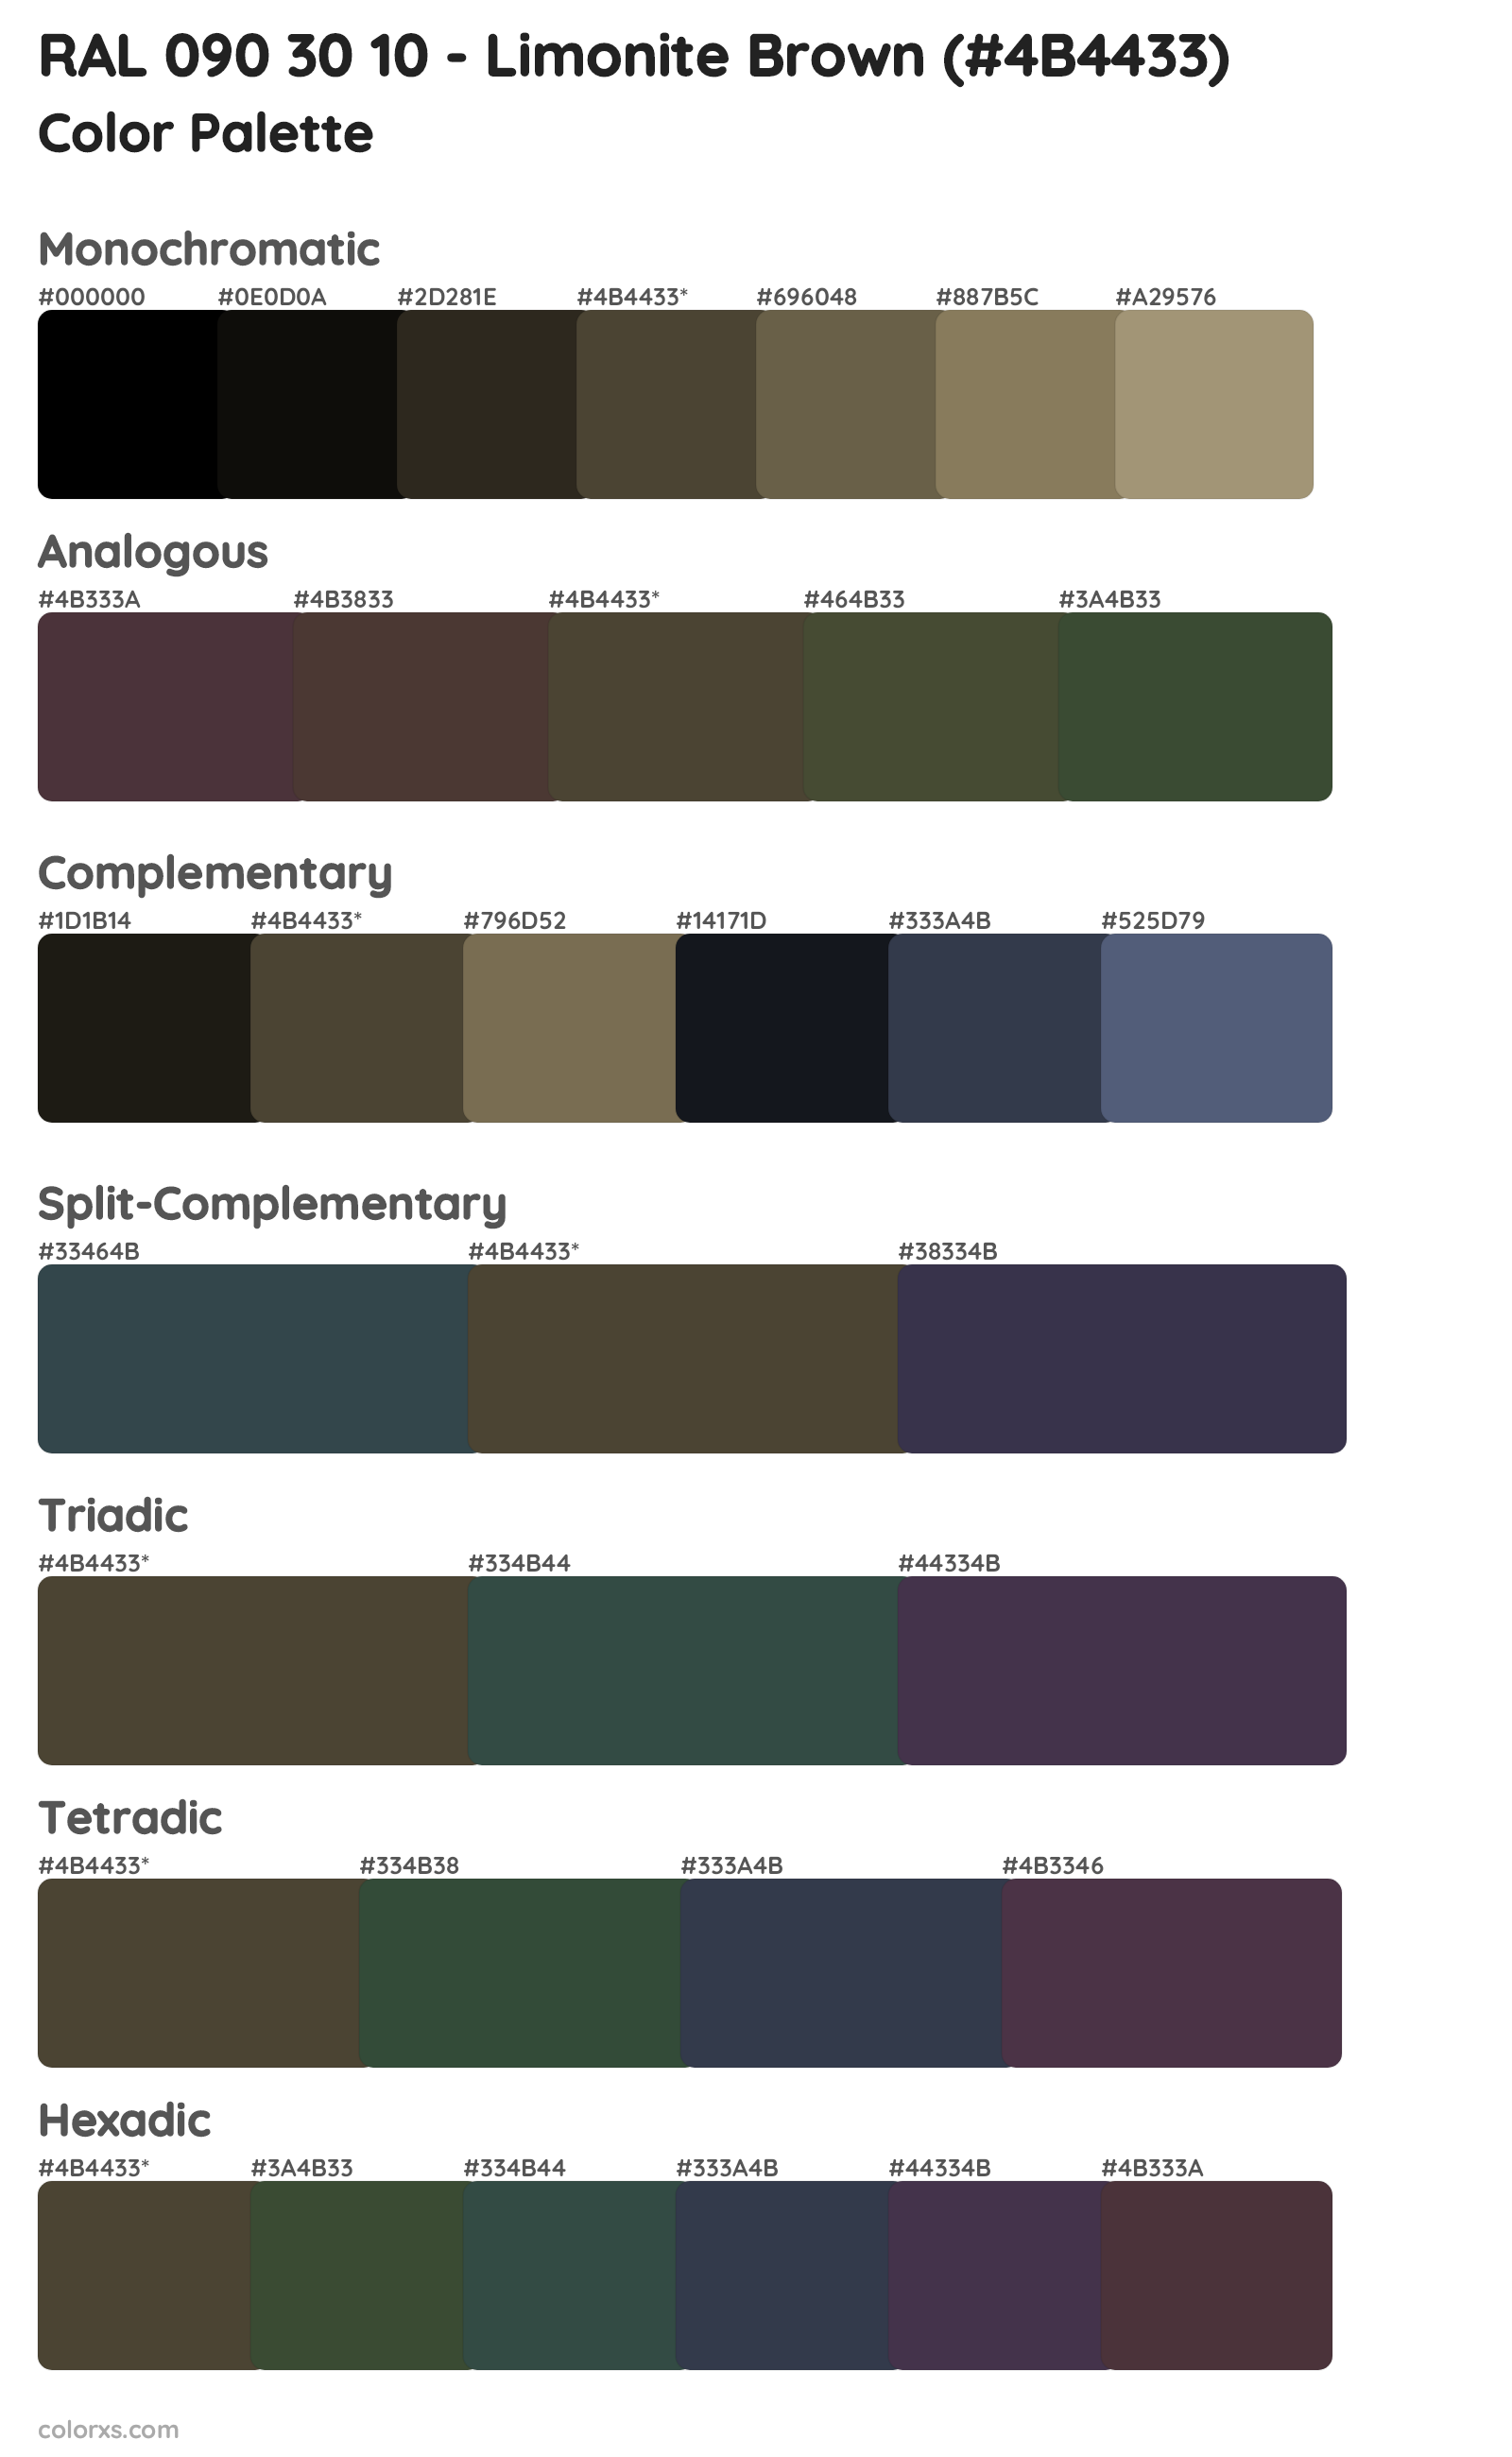 RAL 090 30 10 - Limonite Brown Color Scheme Palettes